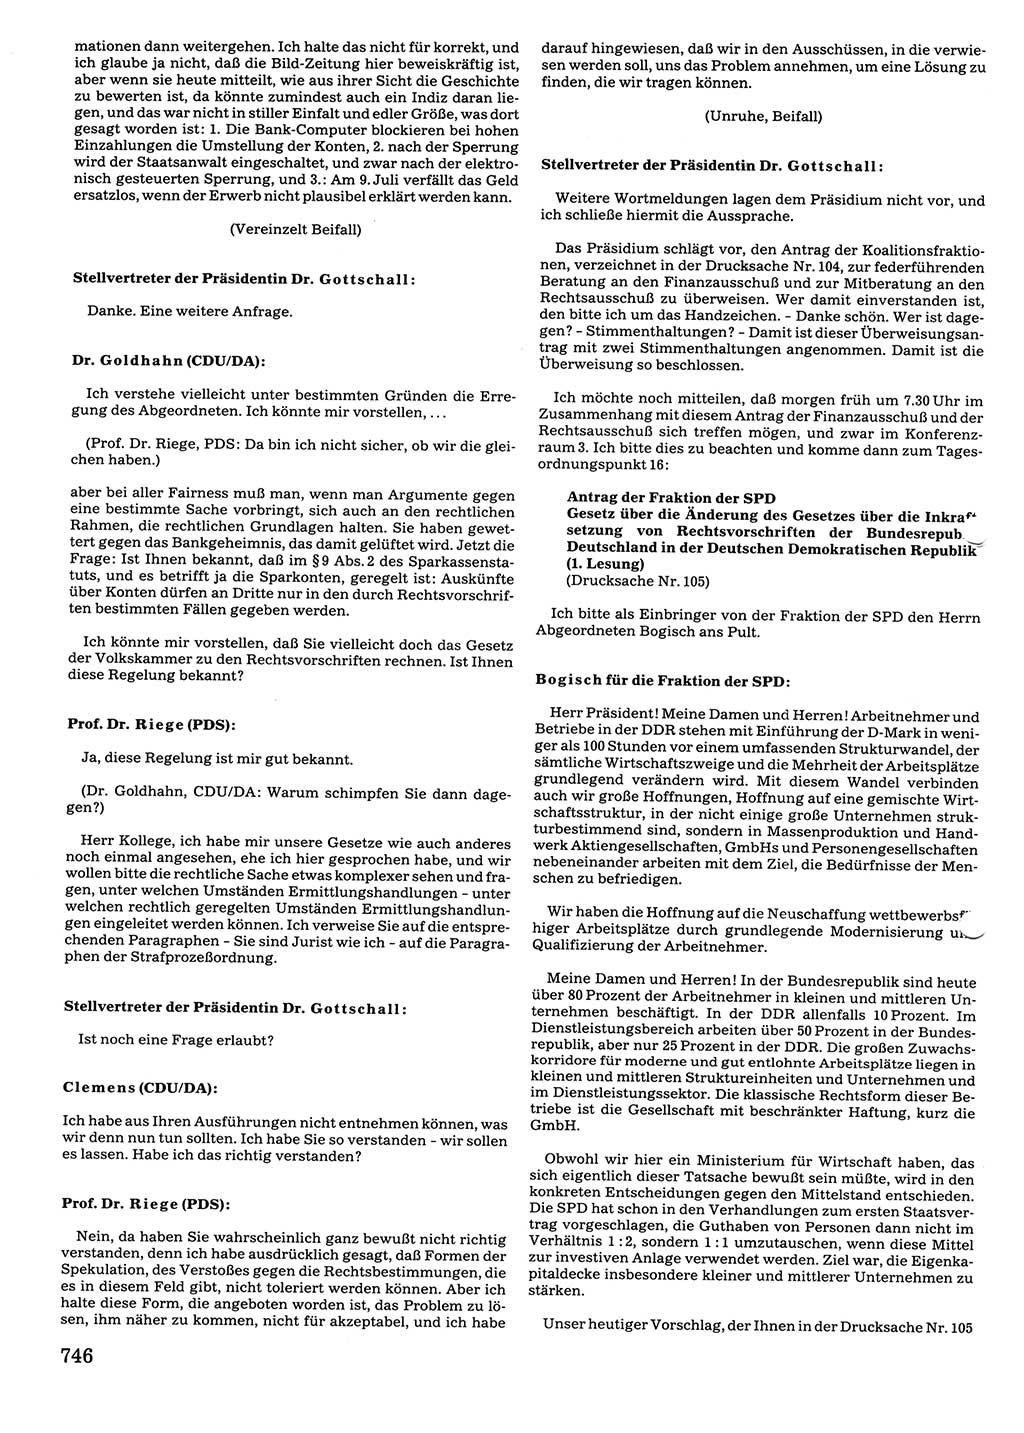 Tagungen der Volkskammer (VK) der Deutschen Demokratischen Republik (DDR), 10. Wahlperiode 1990, Seite 746 (VK. DDR 10. WP. 1990, Prot. Tg. 1-38, 5.4.-2.10.1990, S. 746)